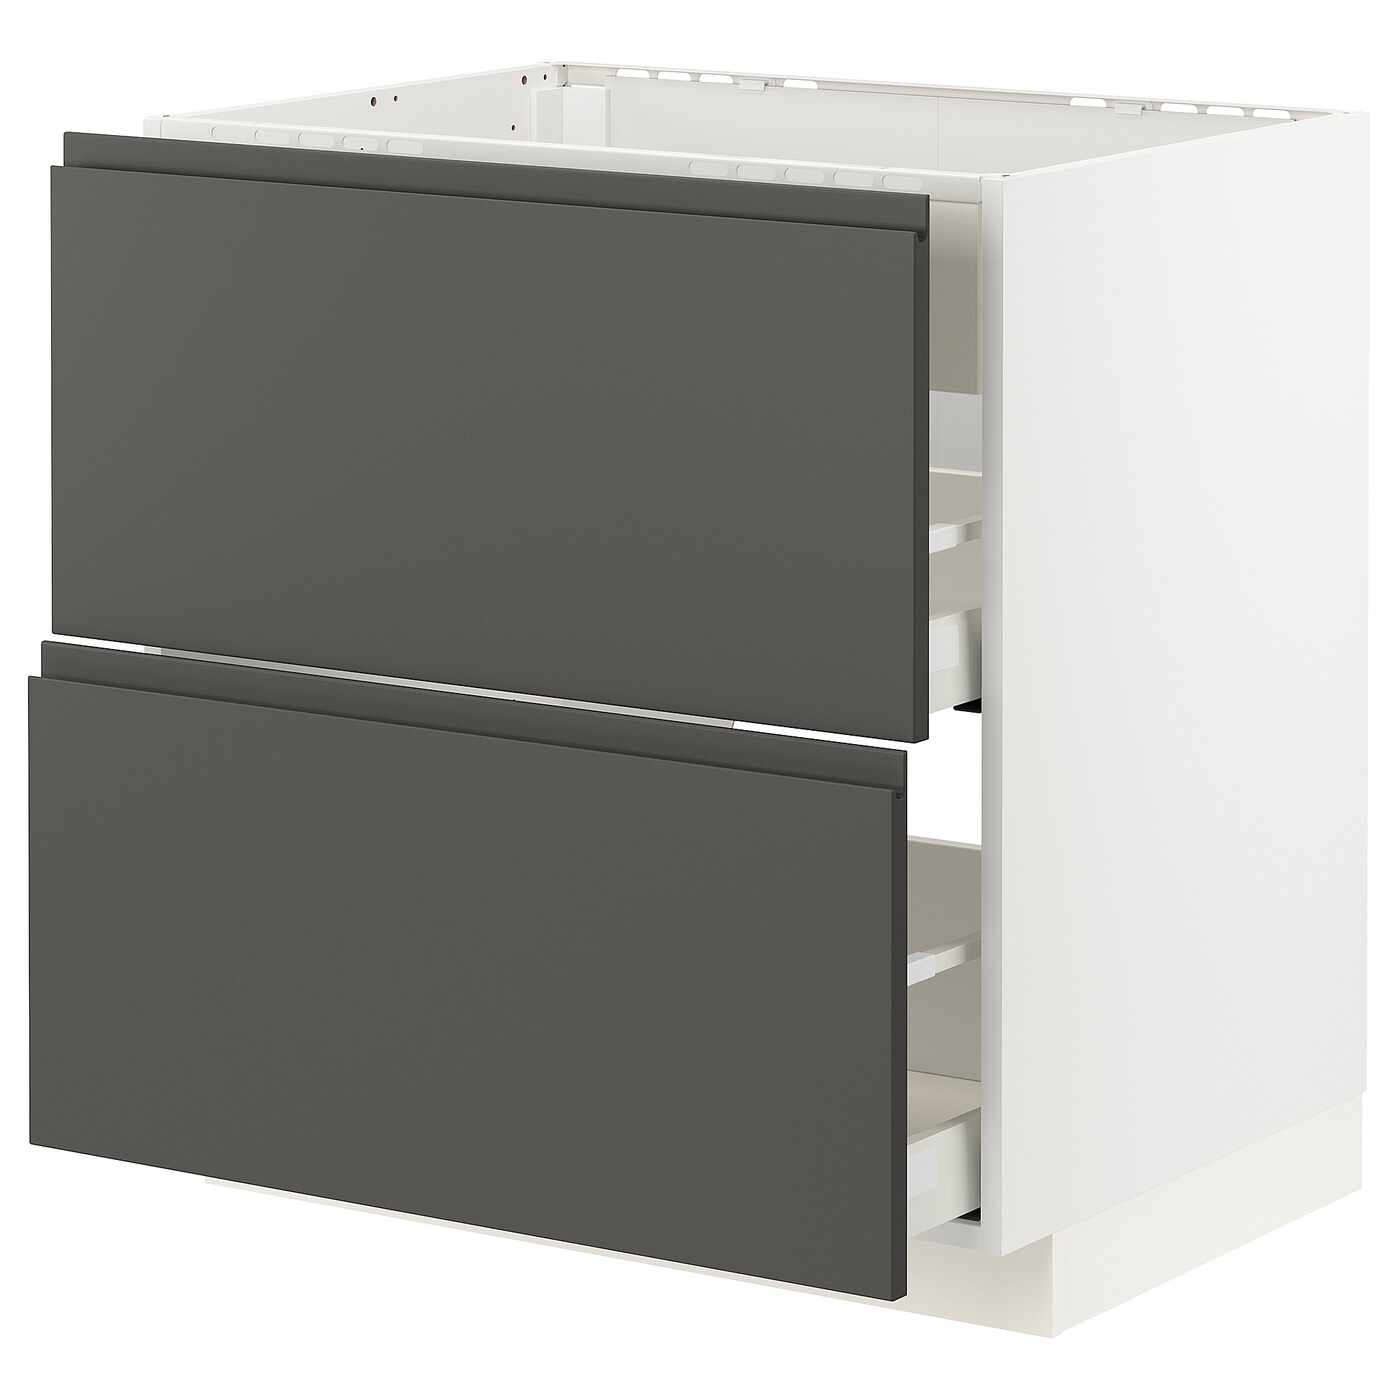 Напольный кухонный шкаф - IKEA METOD MAXIMERA, 88x62x80см, белый/темно-серый, МЕТОД МАКСИМЕРА ИКЕА